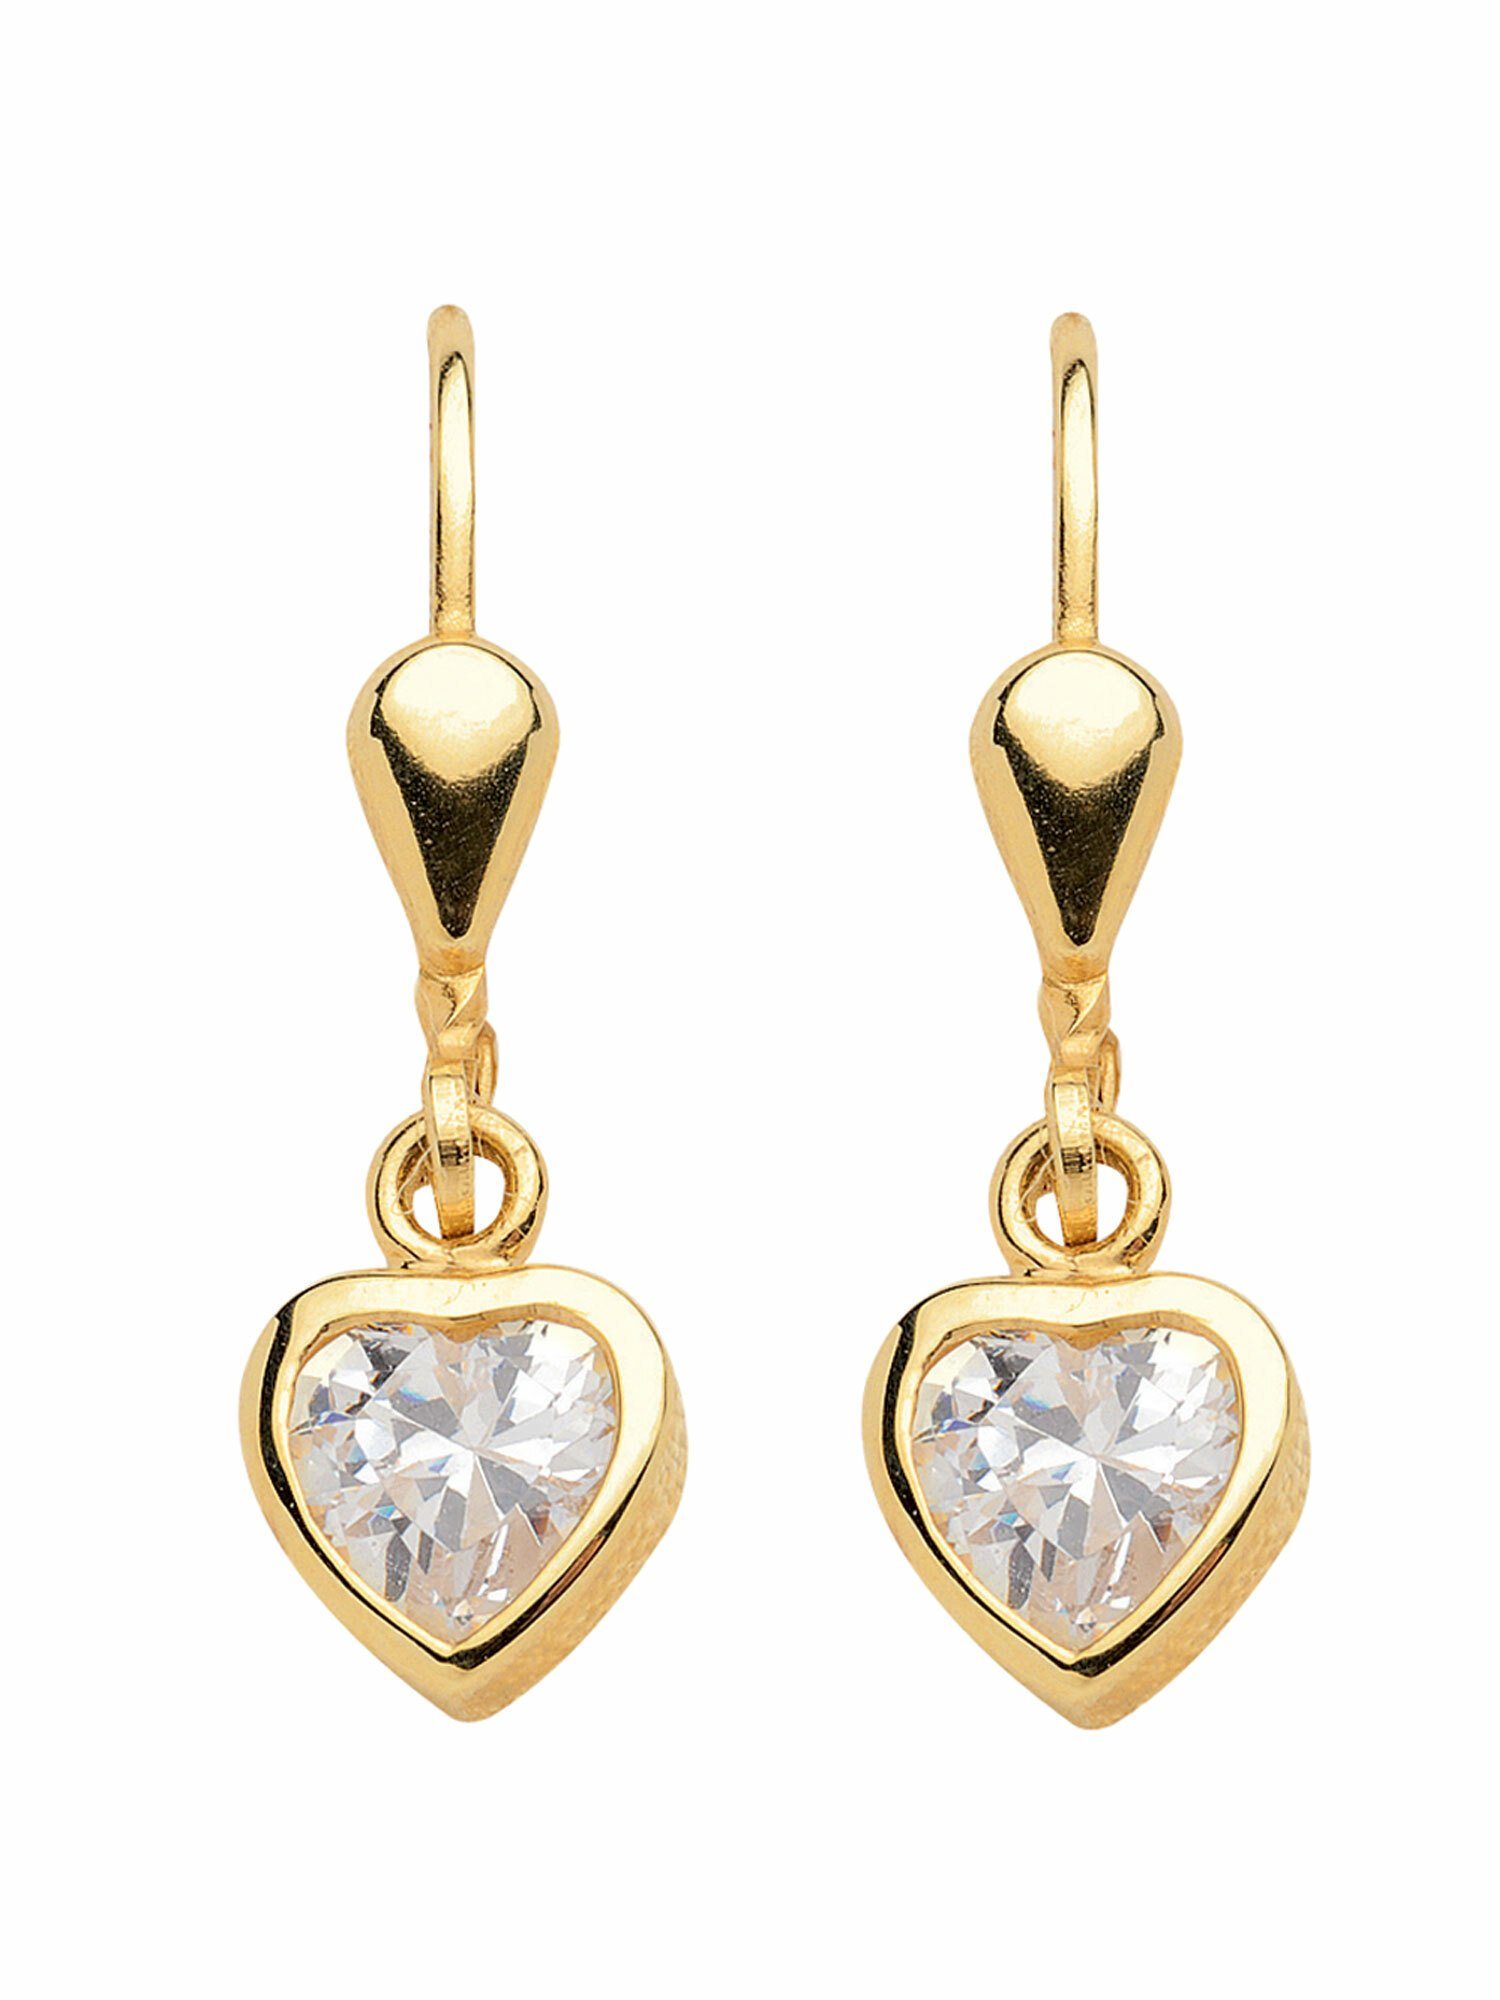 Damen Schmuck Adelia´s Paar Ohrhänger 1 Paar 333 Gold Ohrringe / Ohrhänger Herz mit Zirkonia, 333 Gold Goldschmuck für Damen